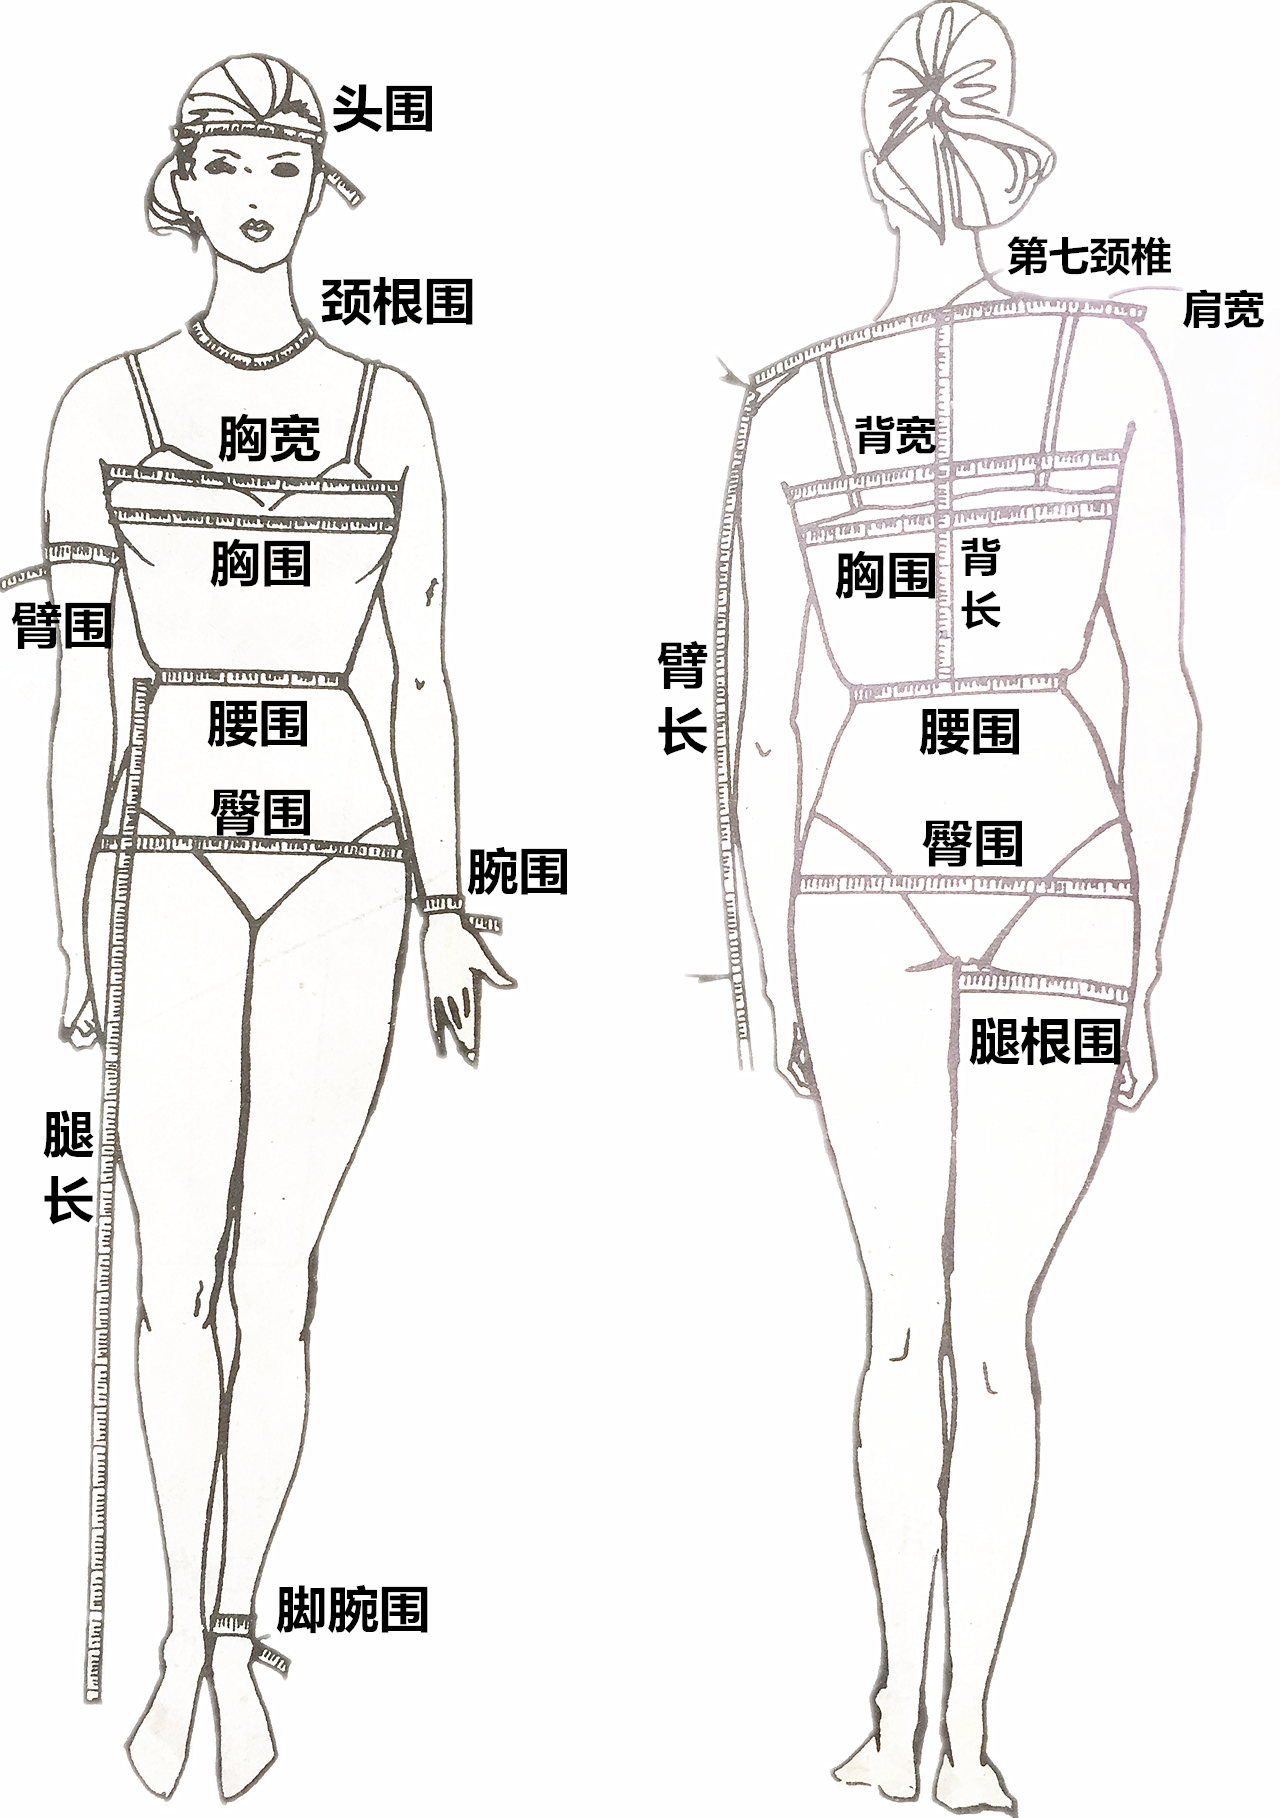 量体裁衣,说明测量的重要性,要取得测量的正确尺寸,被测量者应自然